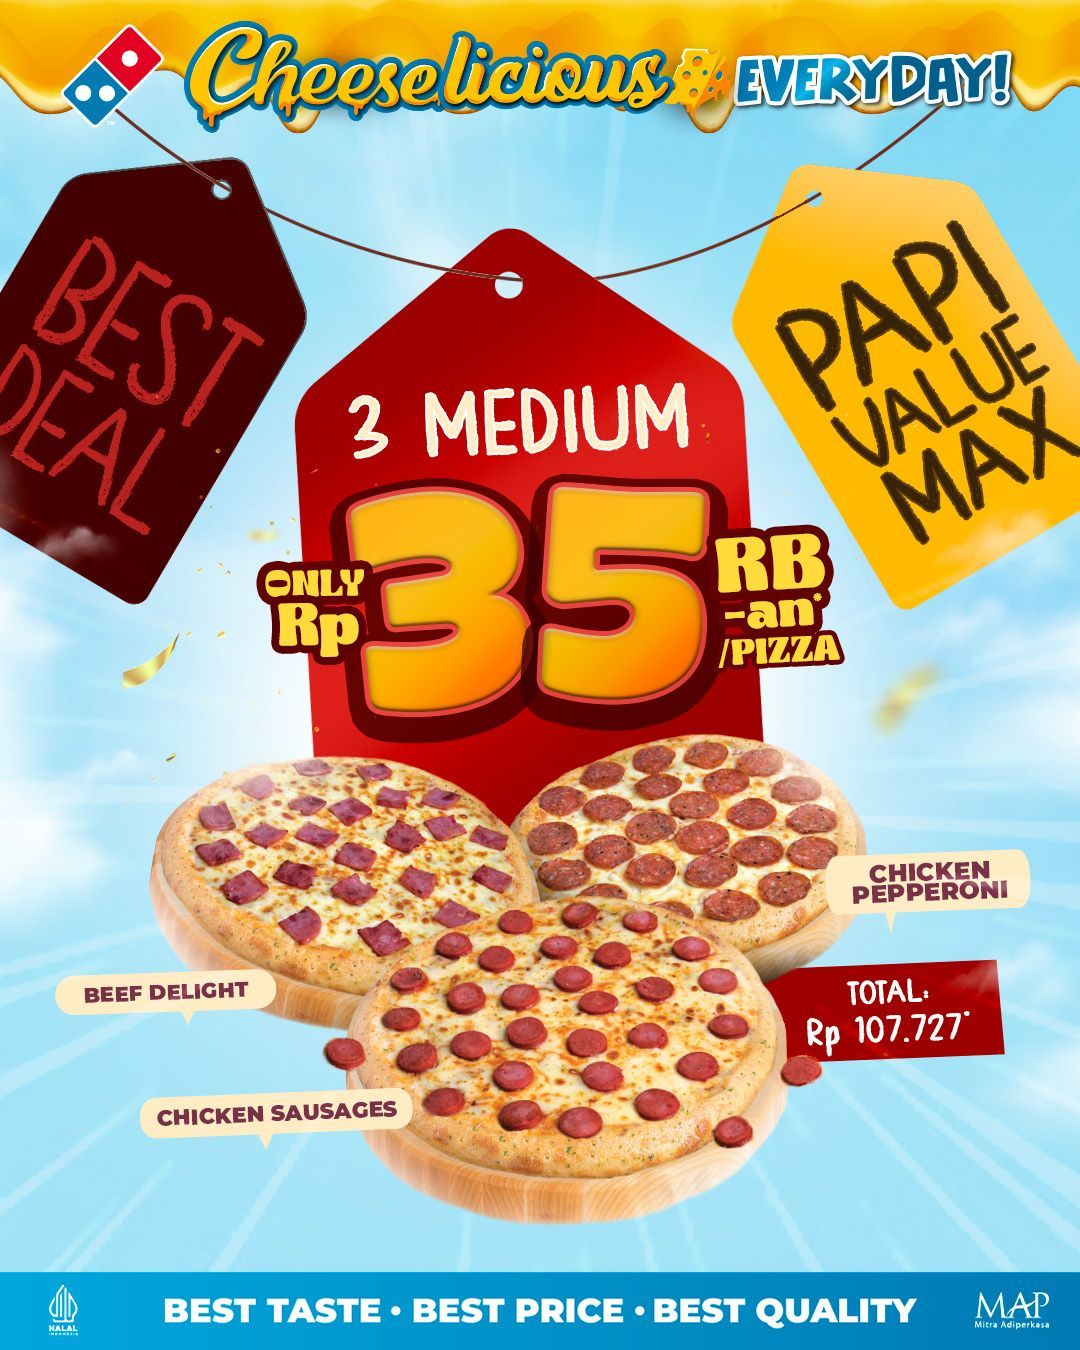 DOMINO'S PIZZA Promo PAPI VALUE MAX – Beli 3 Medium Pizza Hanya Rp. 35K/Pizza